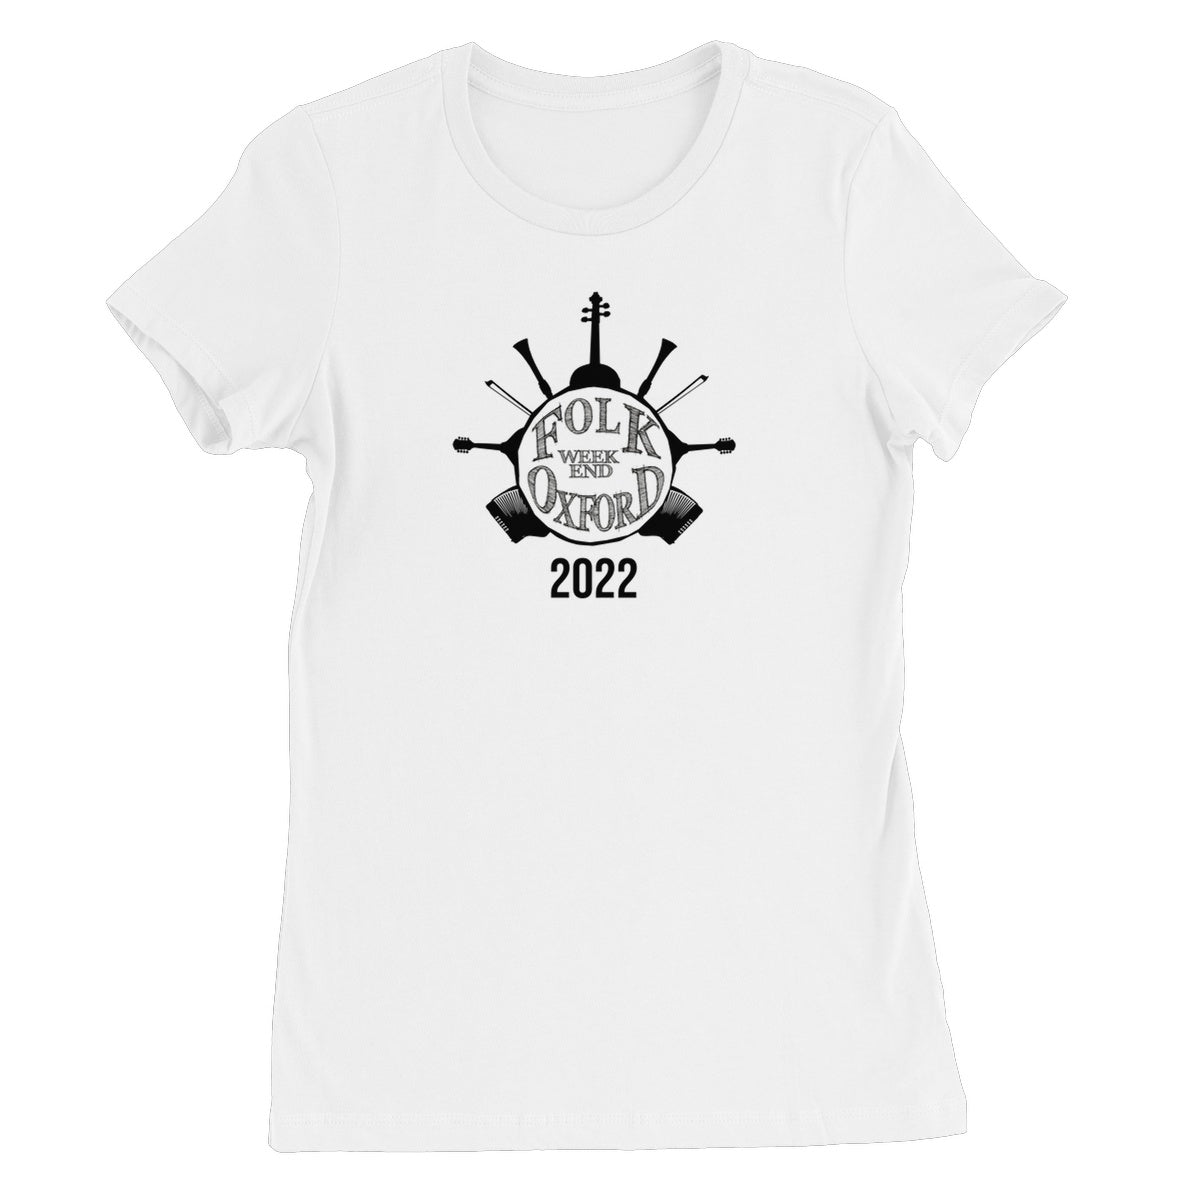 Folk Weekend Oxford 2022 Women's T-Shirt